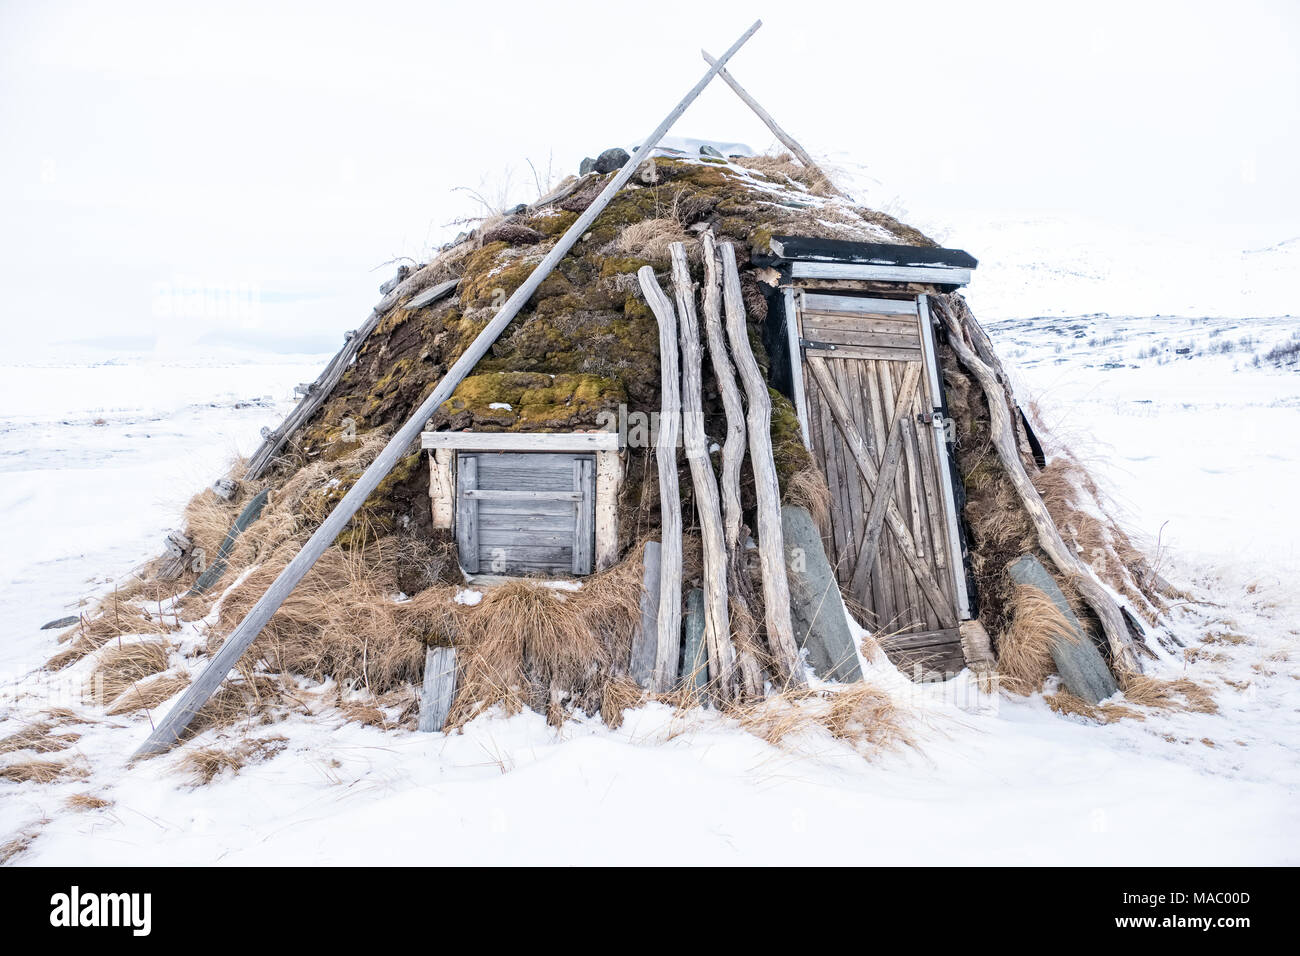 Un goahti ( cabane lapone traditionnelle ) dans un village sami en Suède Banque D'Images